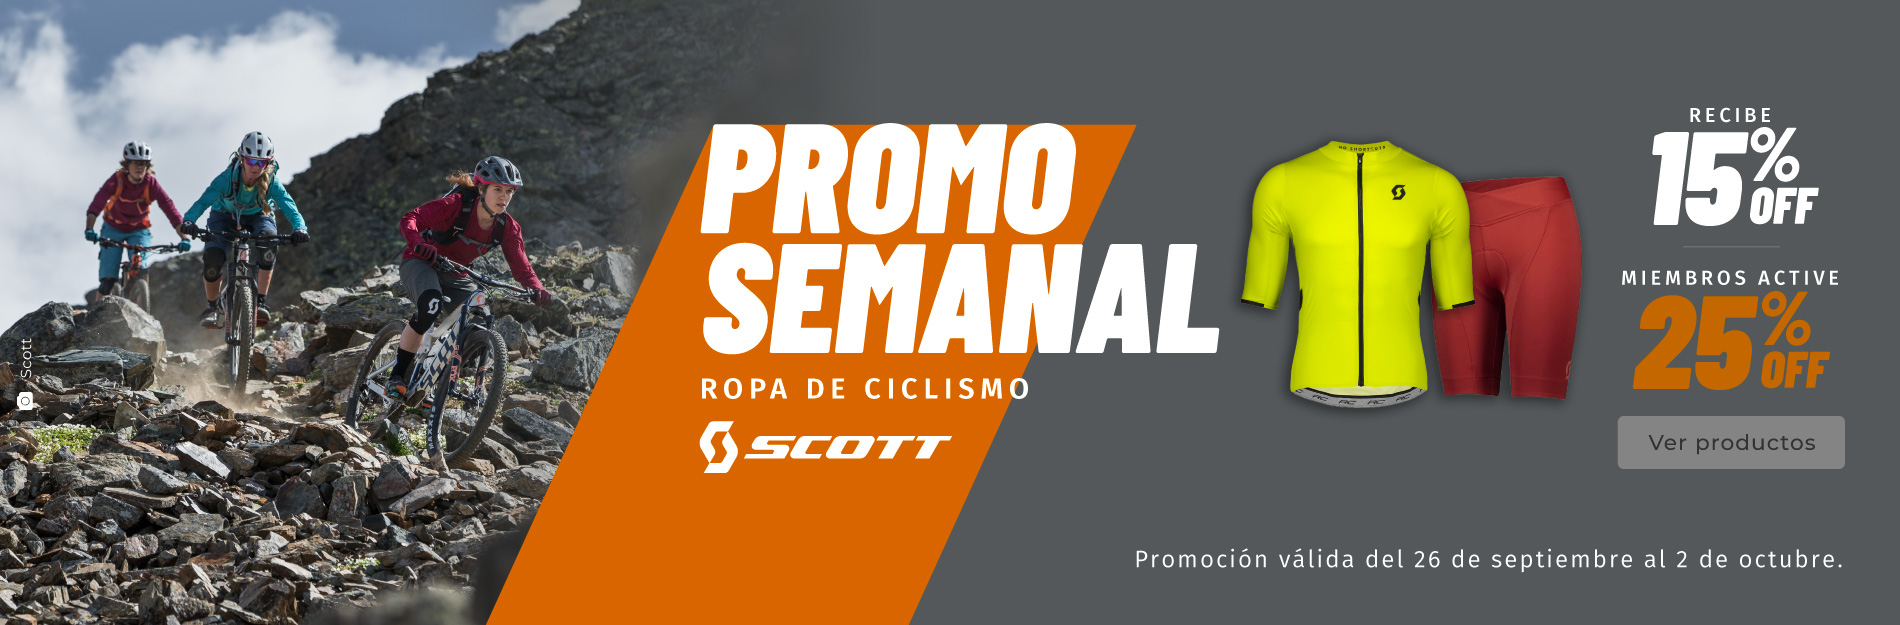 Promoción semanal Ecuador: Ropa de ciclismo - Scott.